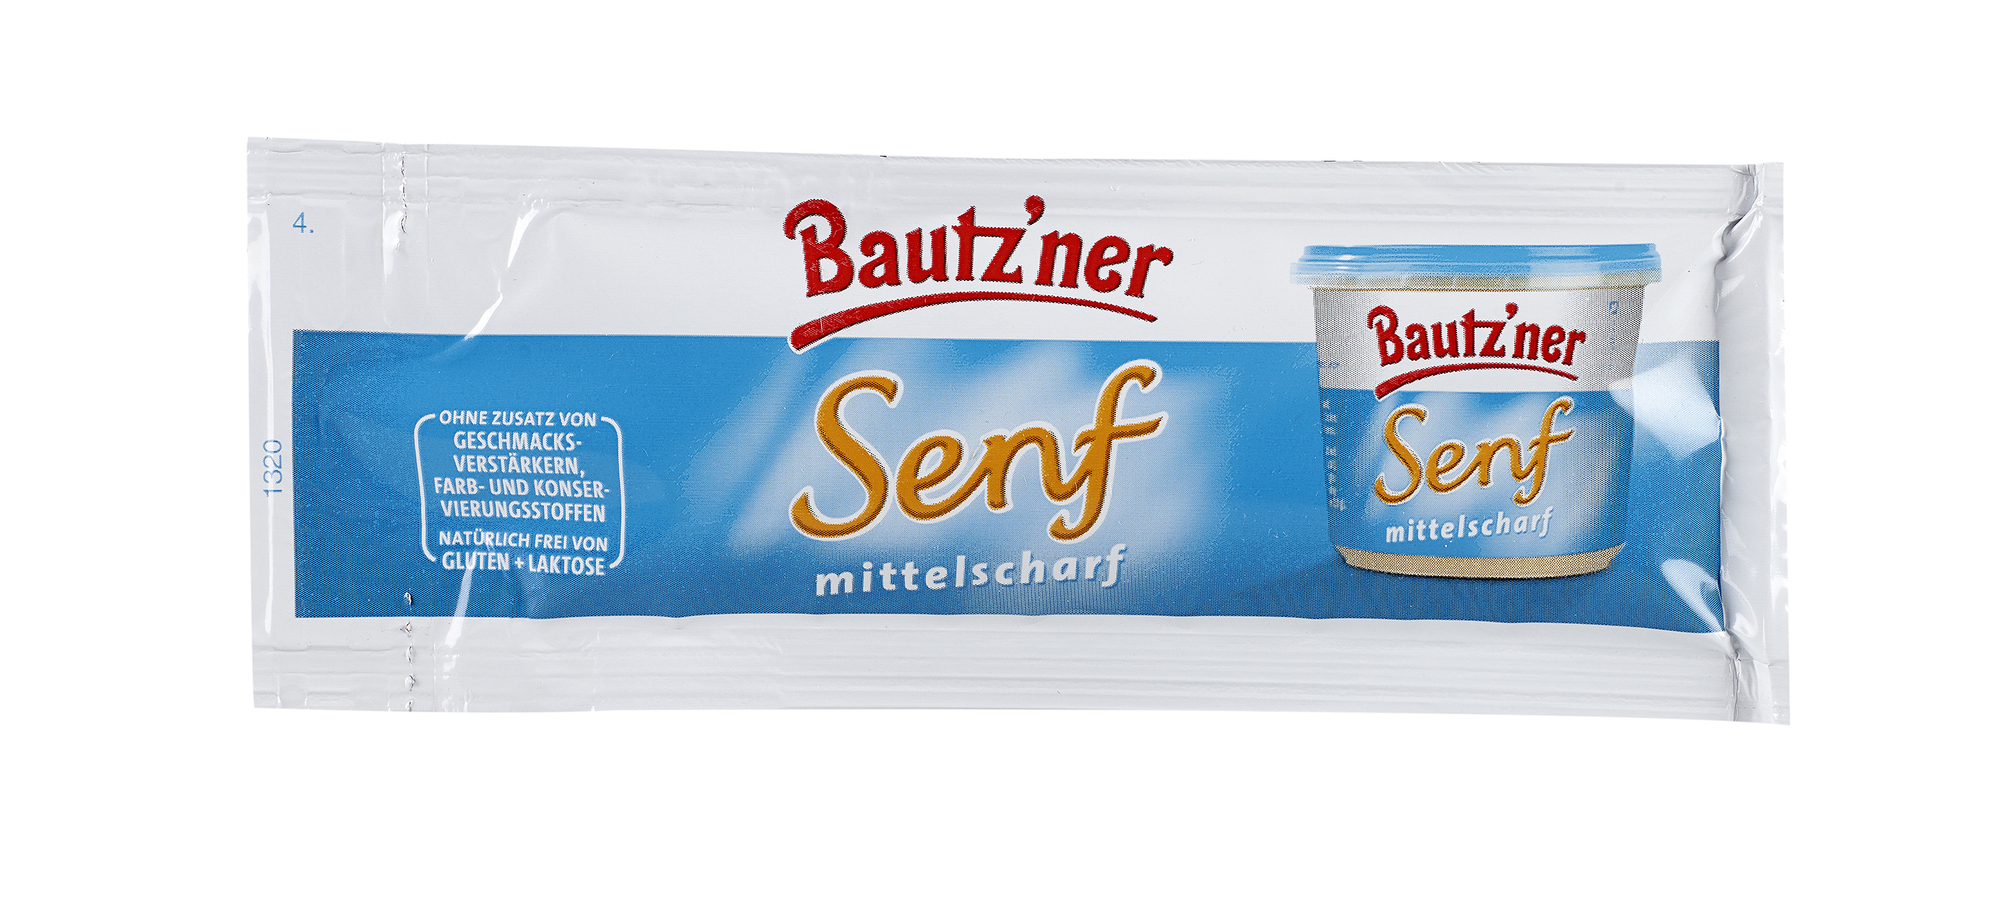 Bautzner Senf mittelscharf 10ml